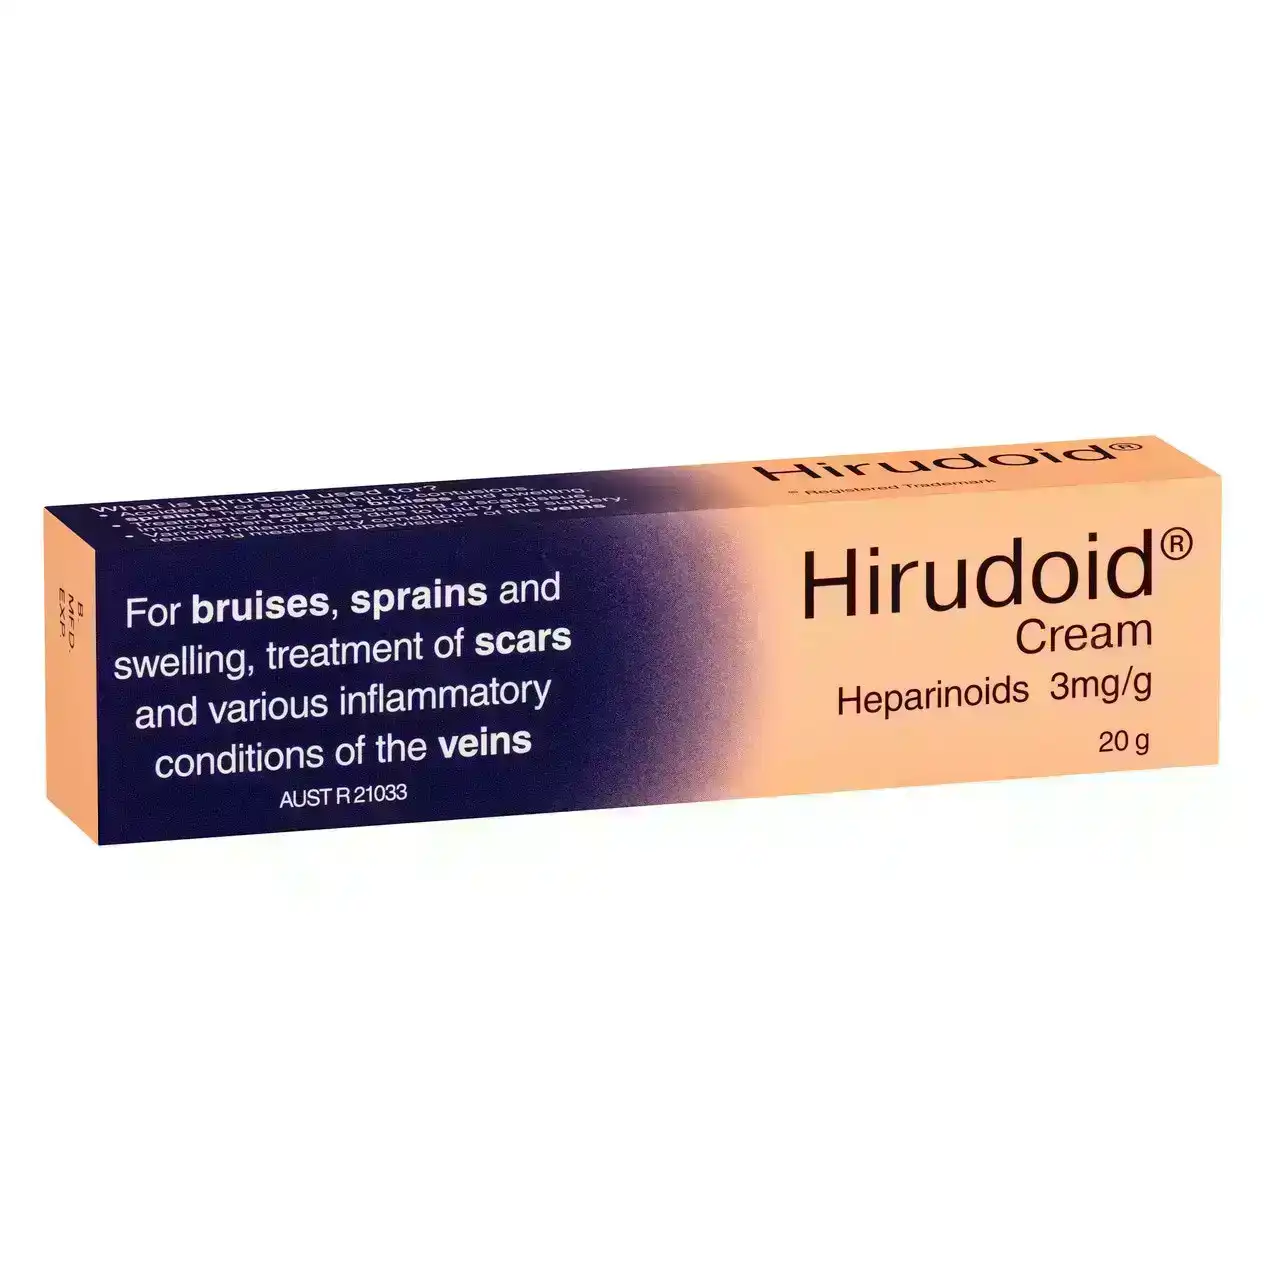 HIRUDOID Cream 20g